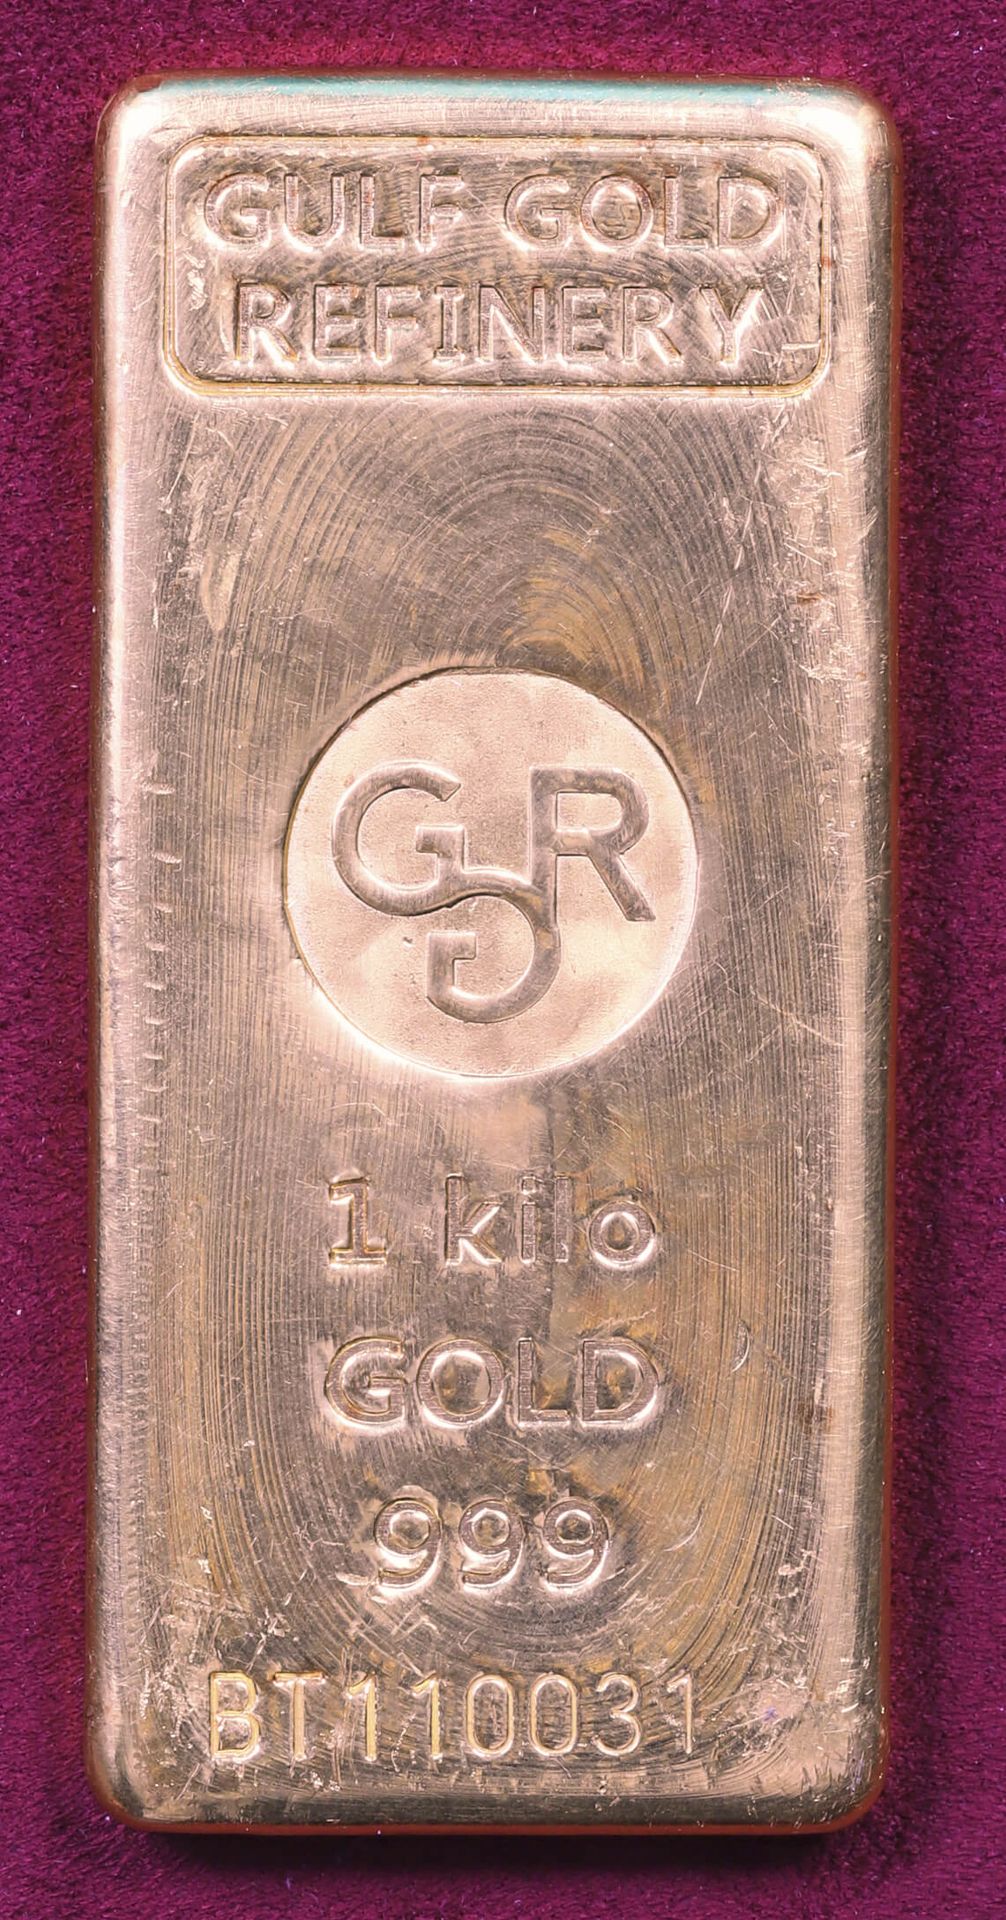 Null Lingote de oro (999‰)

Refinería de oro del Golfo

Con el número BT110031

&hellip;